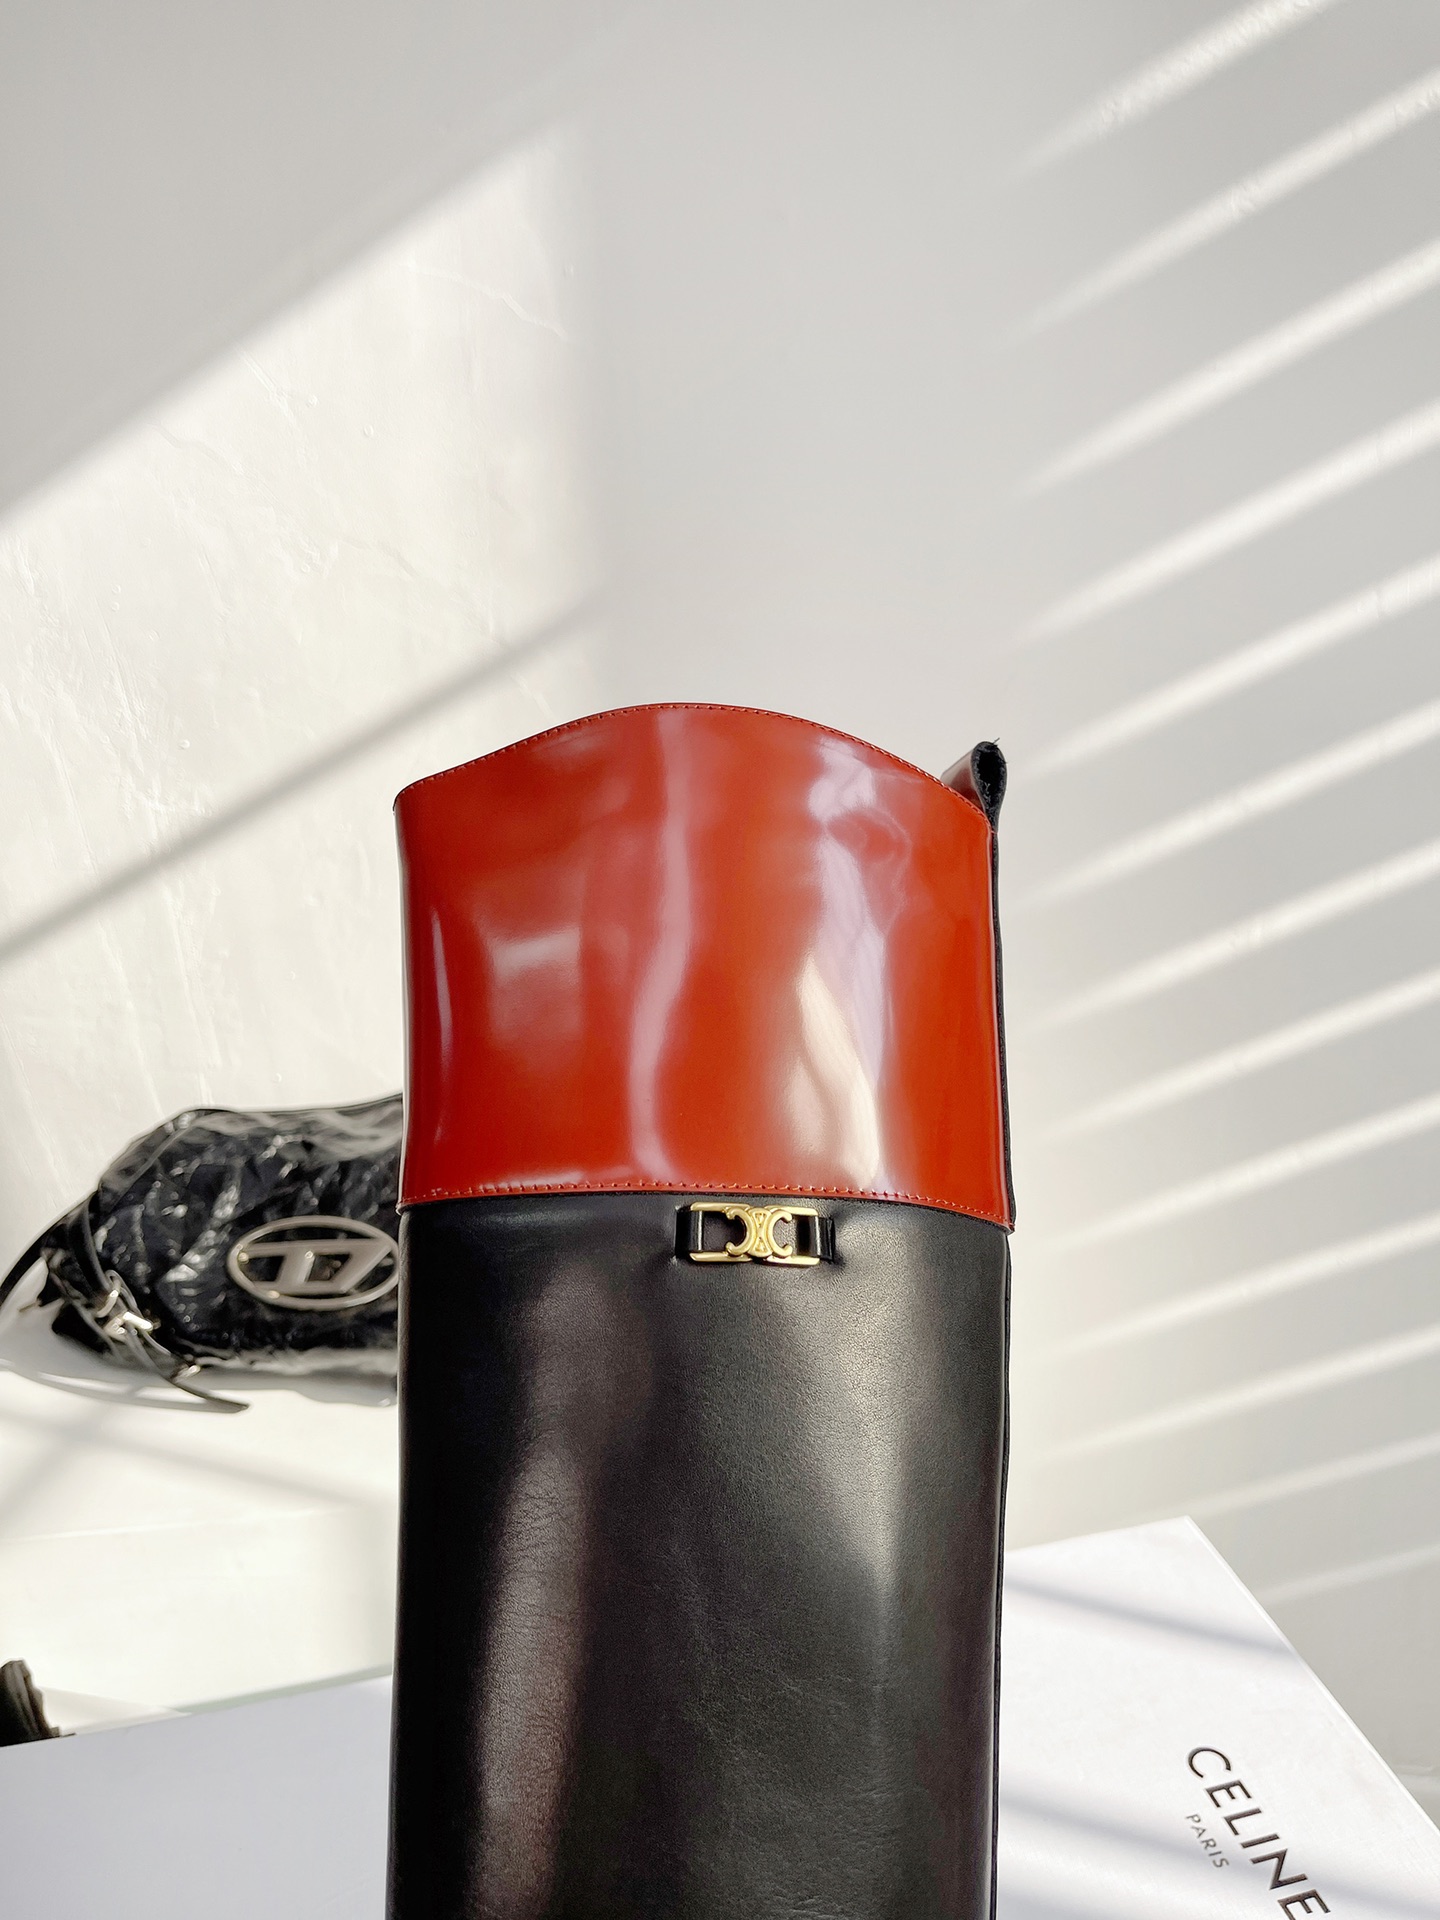 セリーヌ英語スーパーコピー ブーツ 黒 レディース ロングブーツ レザー 歩きやすい ファッション 高級品 黒赤い ブラック_3